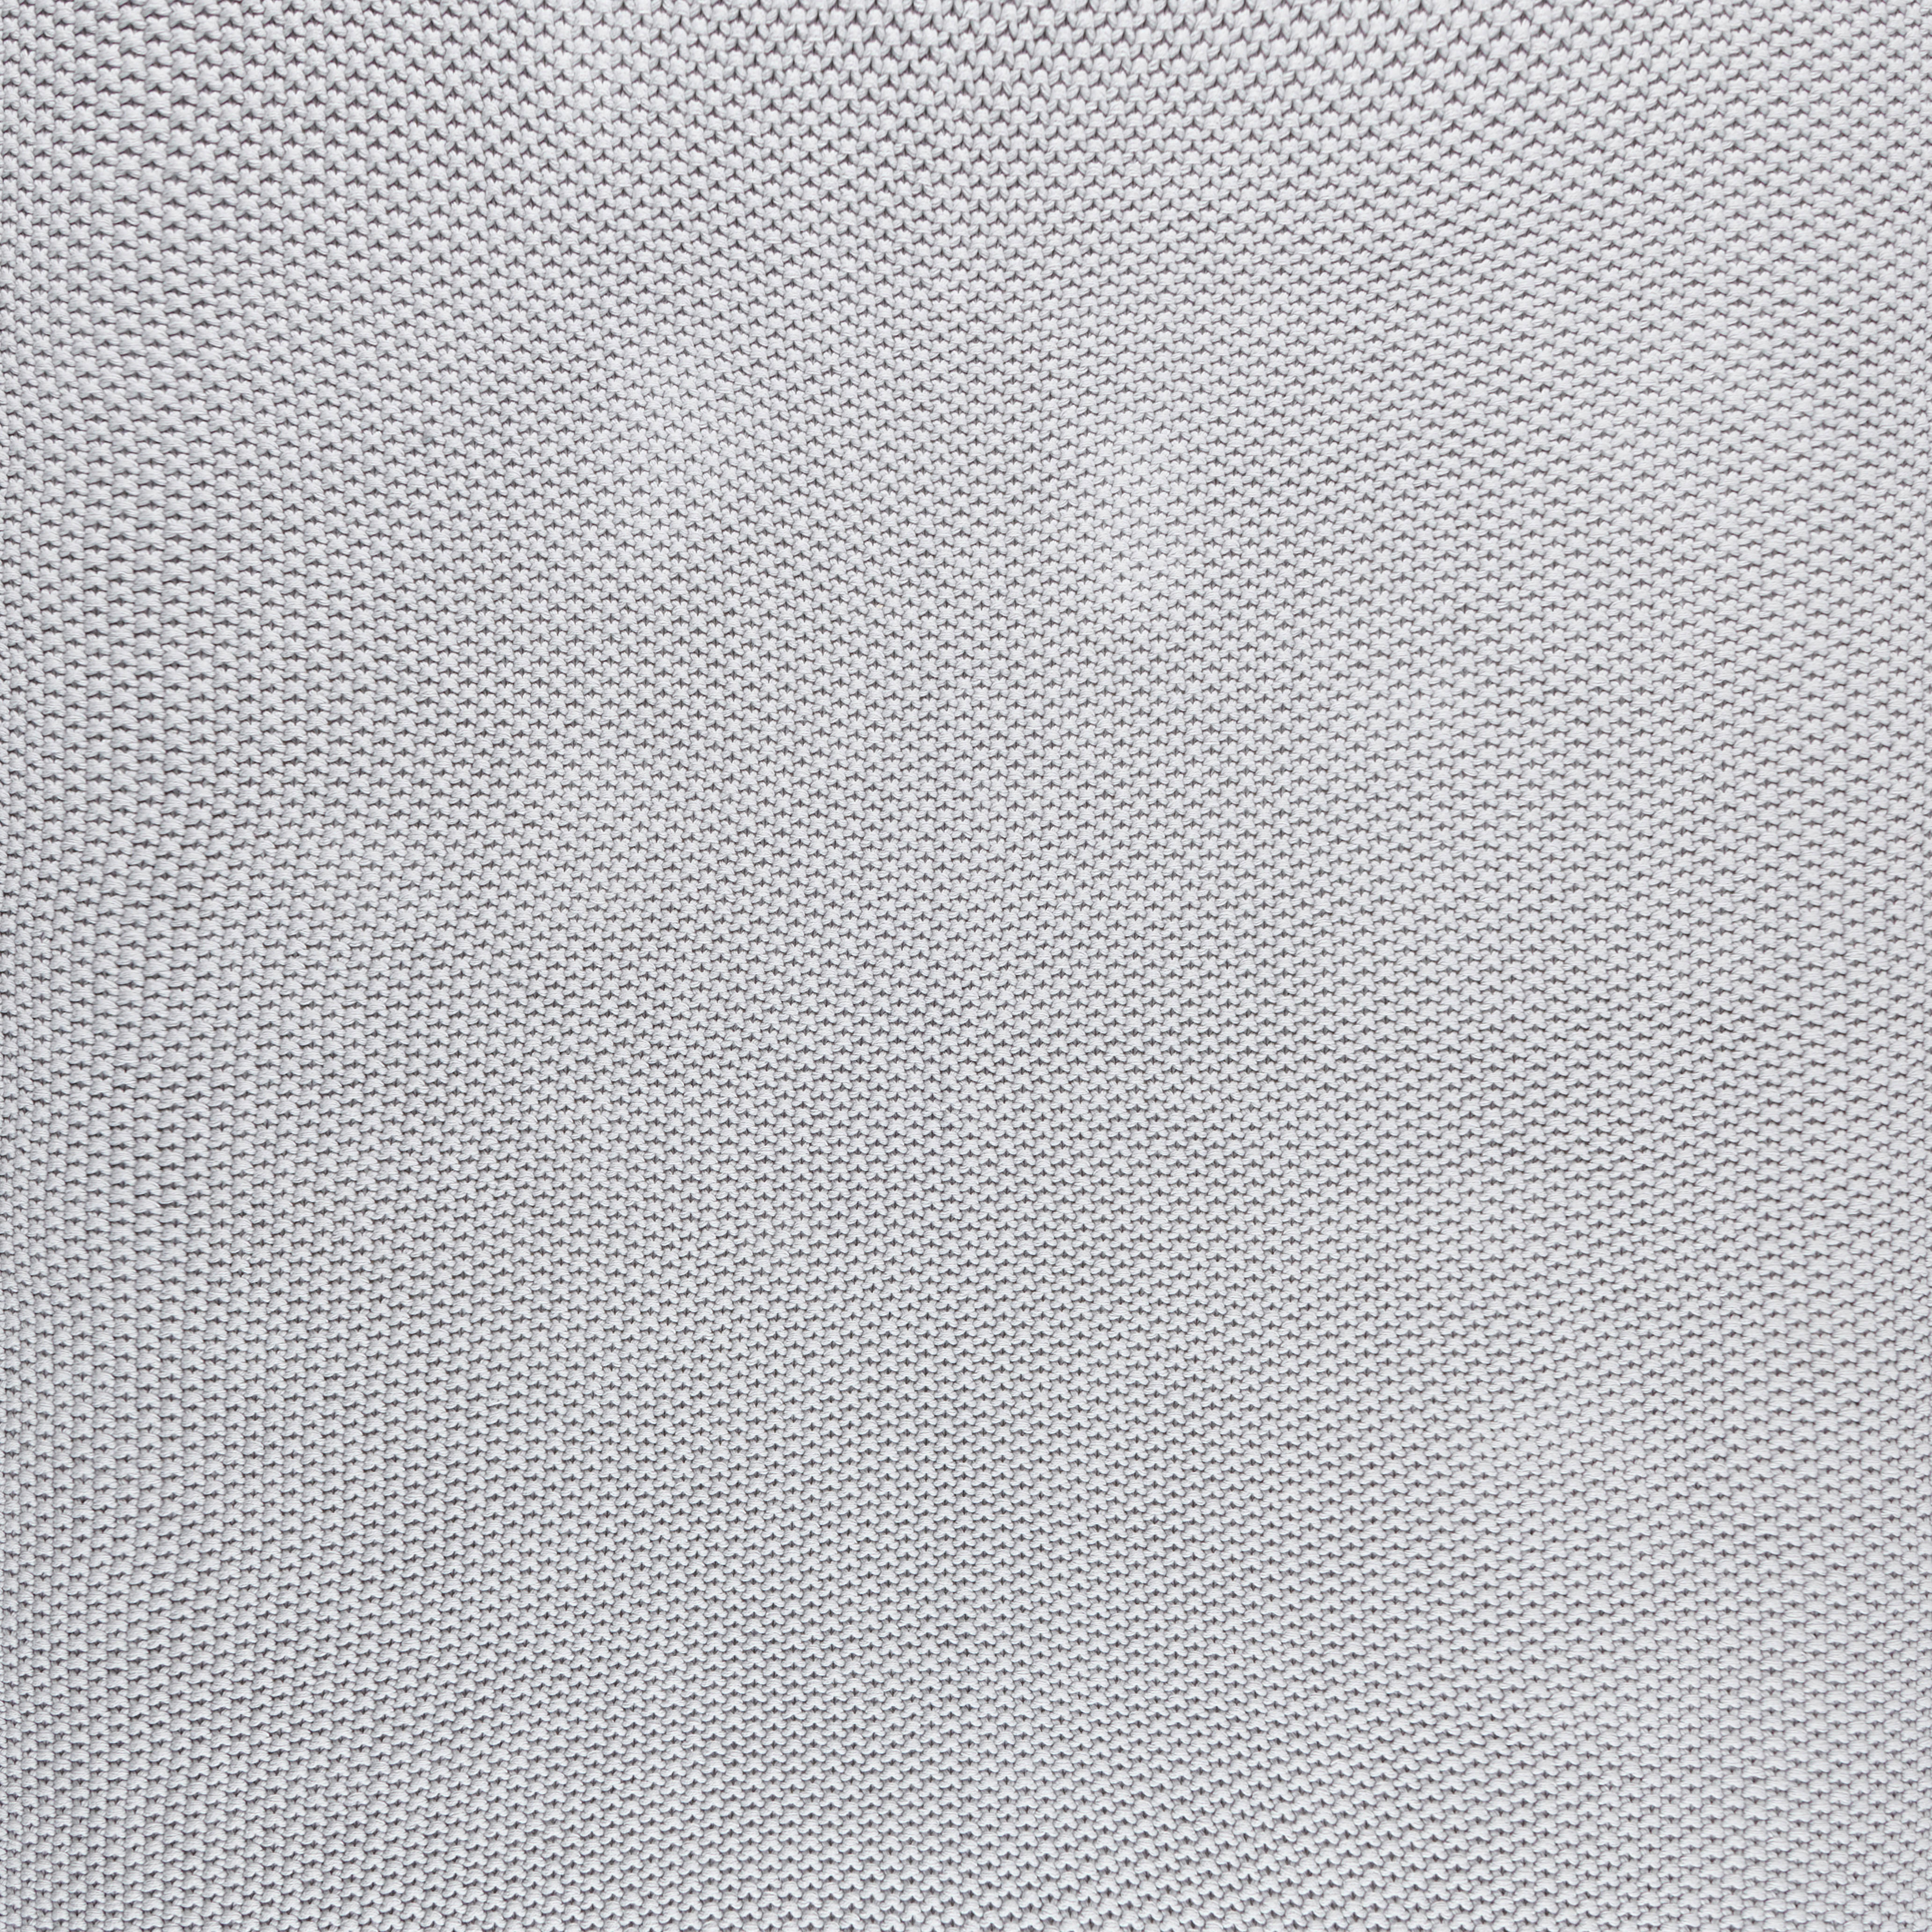 MEKANO ĆEBE 80/100 cm  - siva, Trendi, tekstil (80/100cm) - Avelia